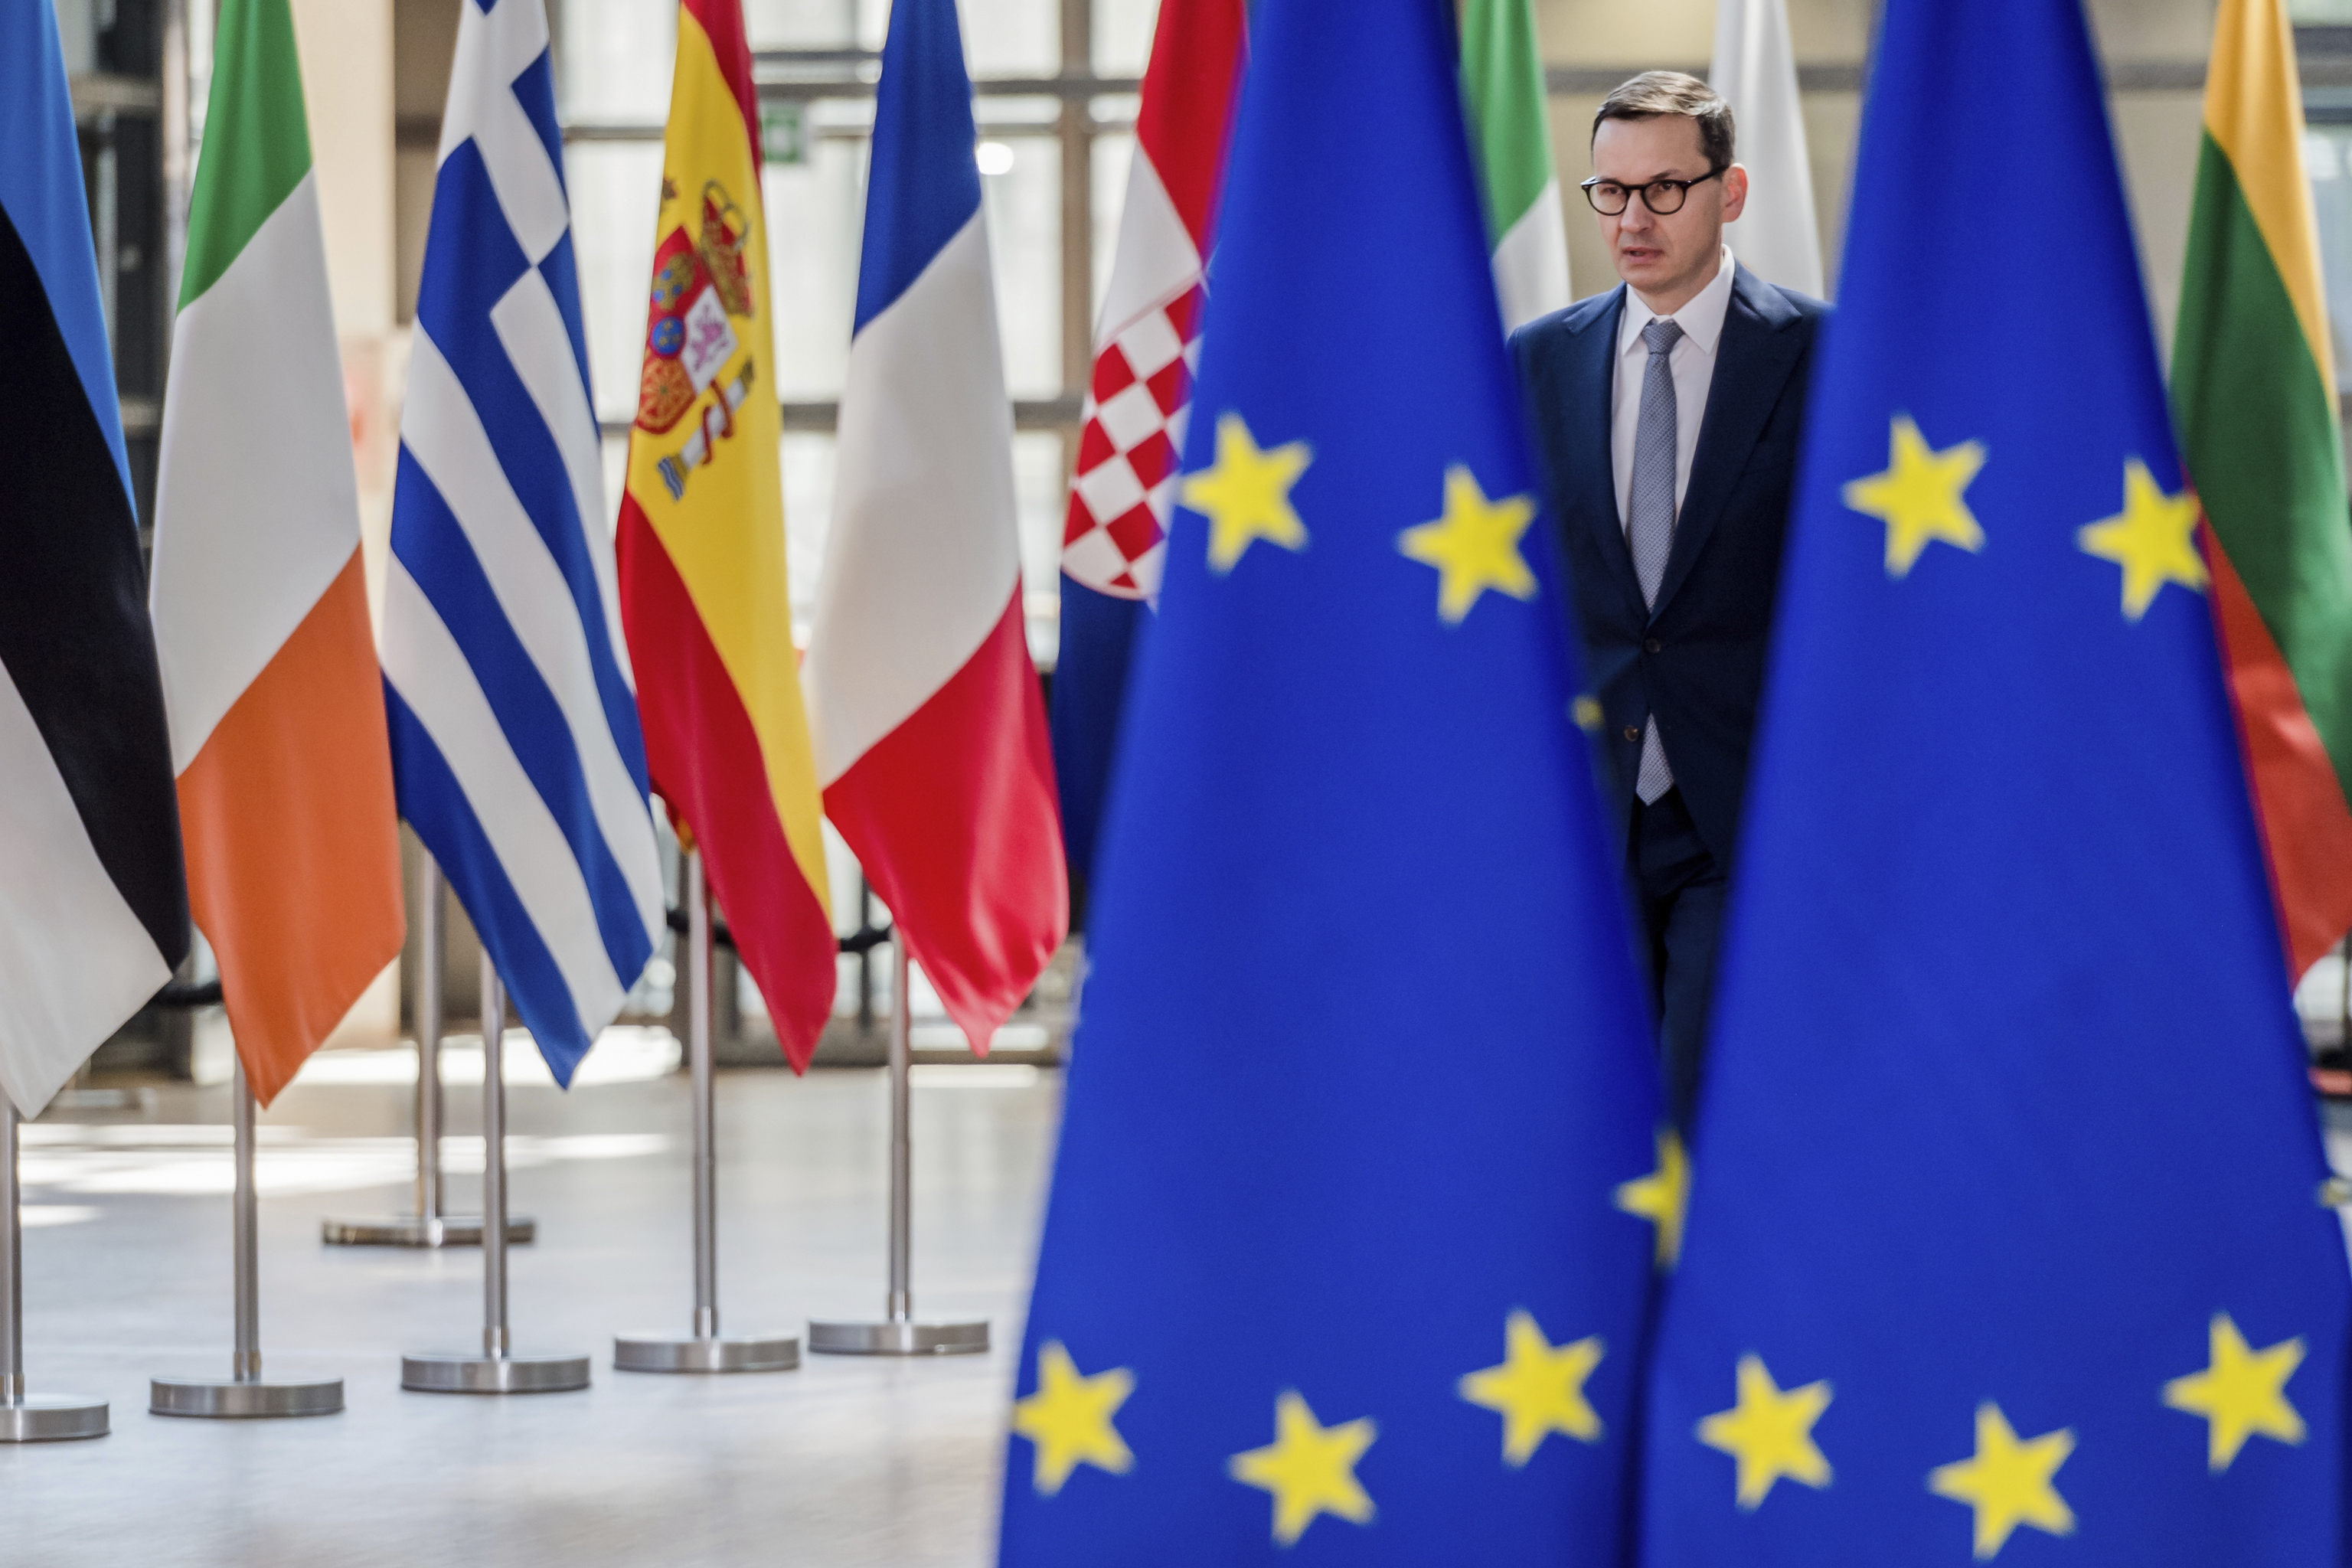 Bruselas desbloquea el Fondo de Recuperación polaco fiándose de reformas judiciales cuestionables